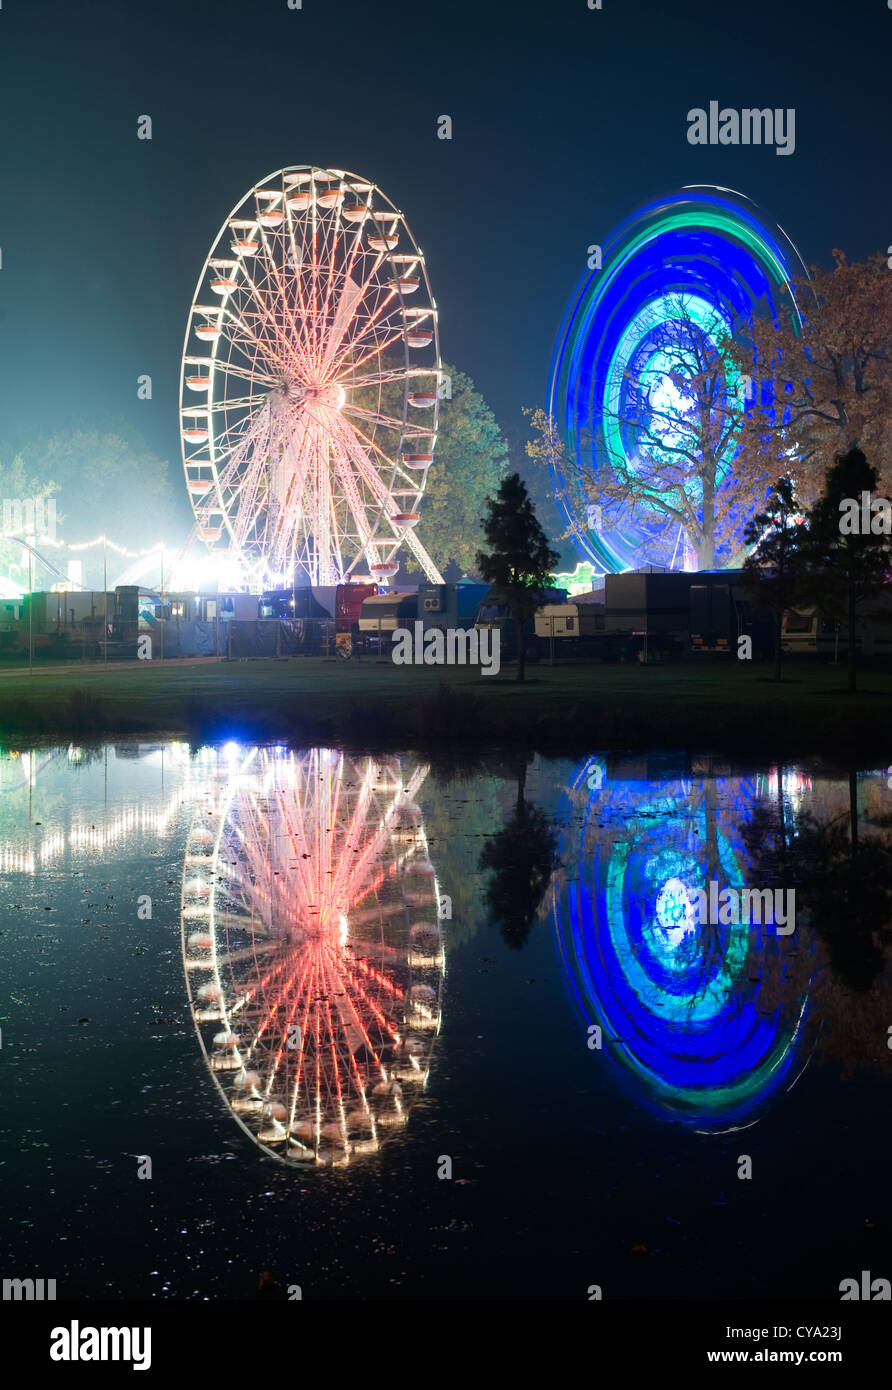 Las luces de dos ruedas de ferris en un parque de diversiones se refleja en el agua de un estanque Foto de stock